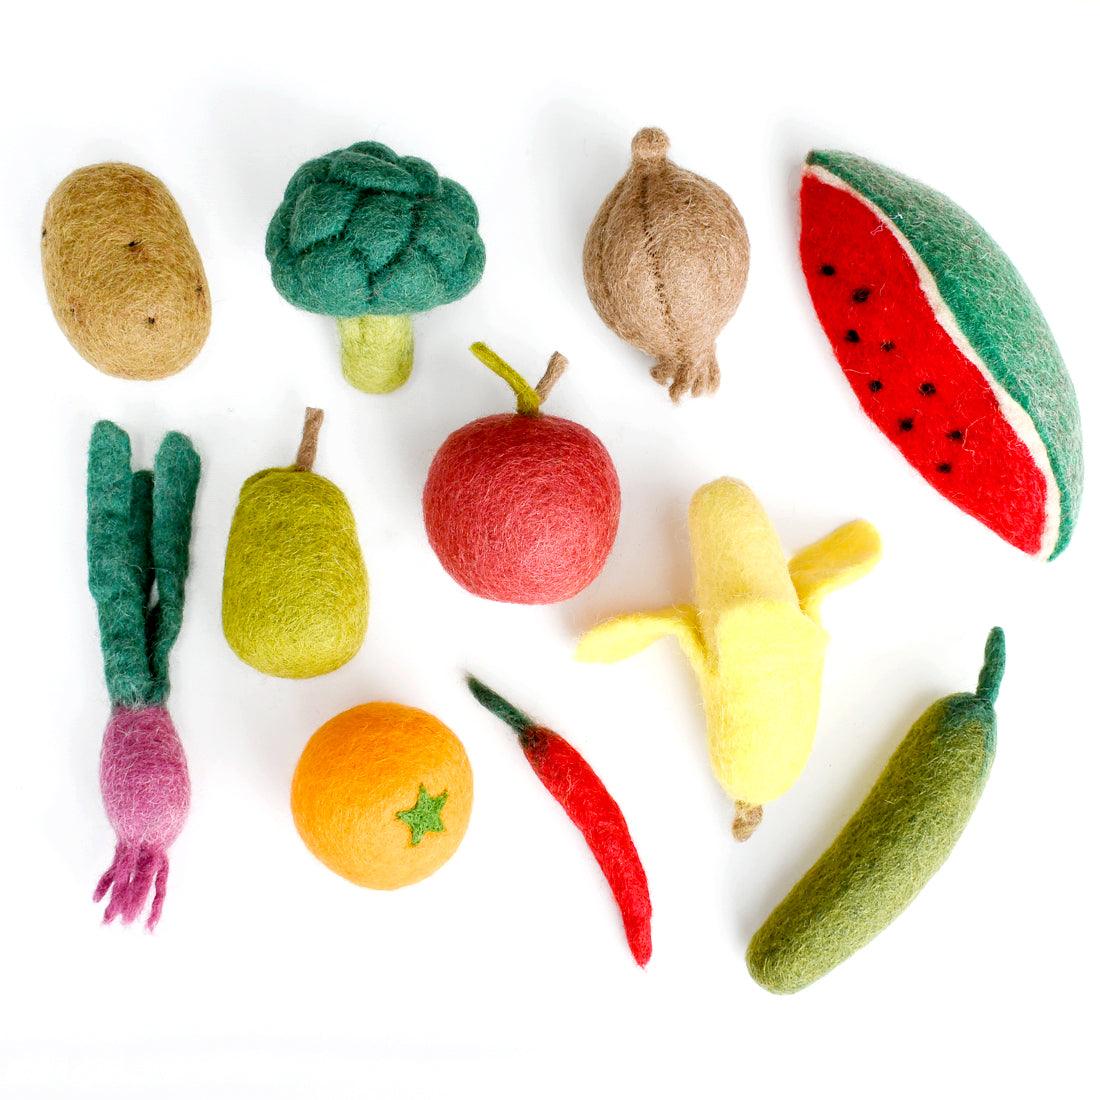 Tara Treasures Felt Vegetables and Fruits Set B - 11 pieces